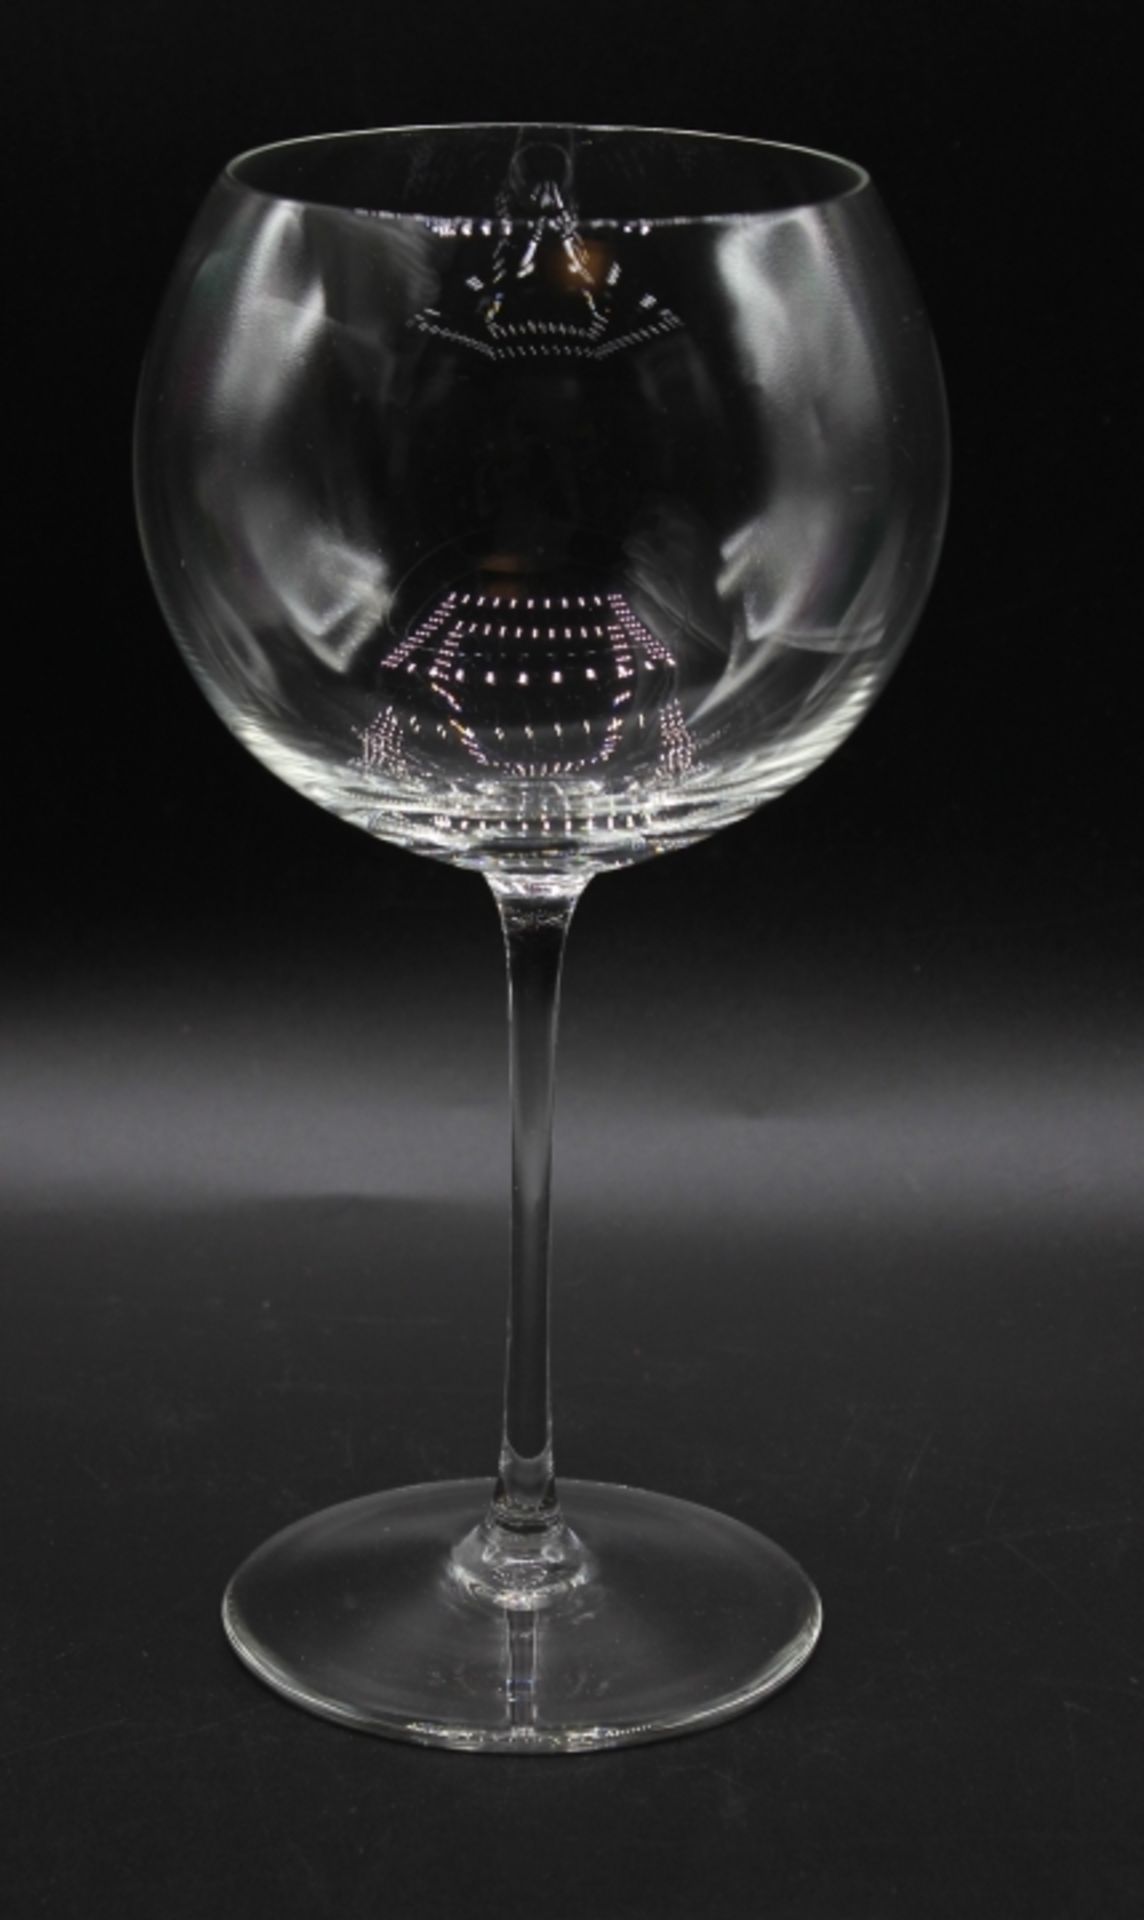 12 Weingläser bauchige Form, Höhe 22,5 cm, d.= 13 cm, kein Versand möglich